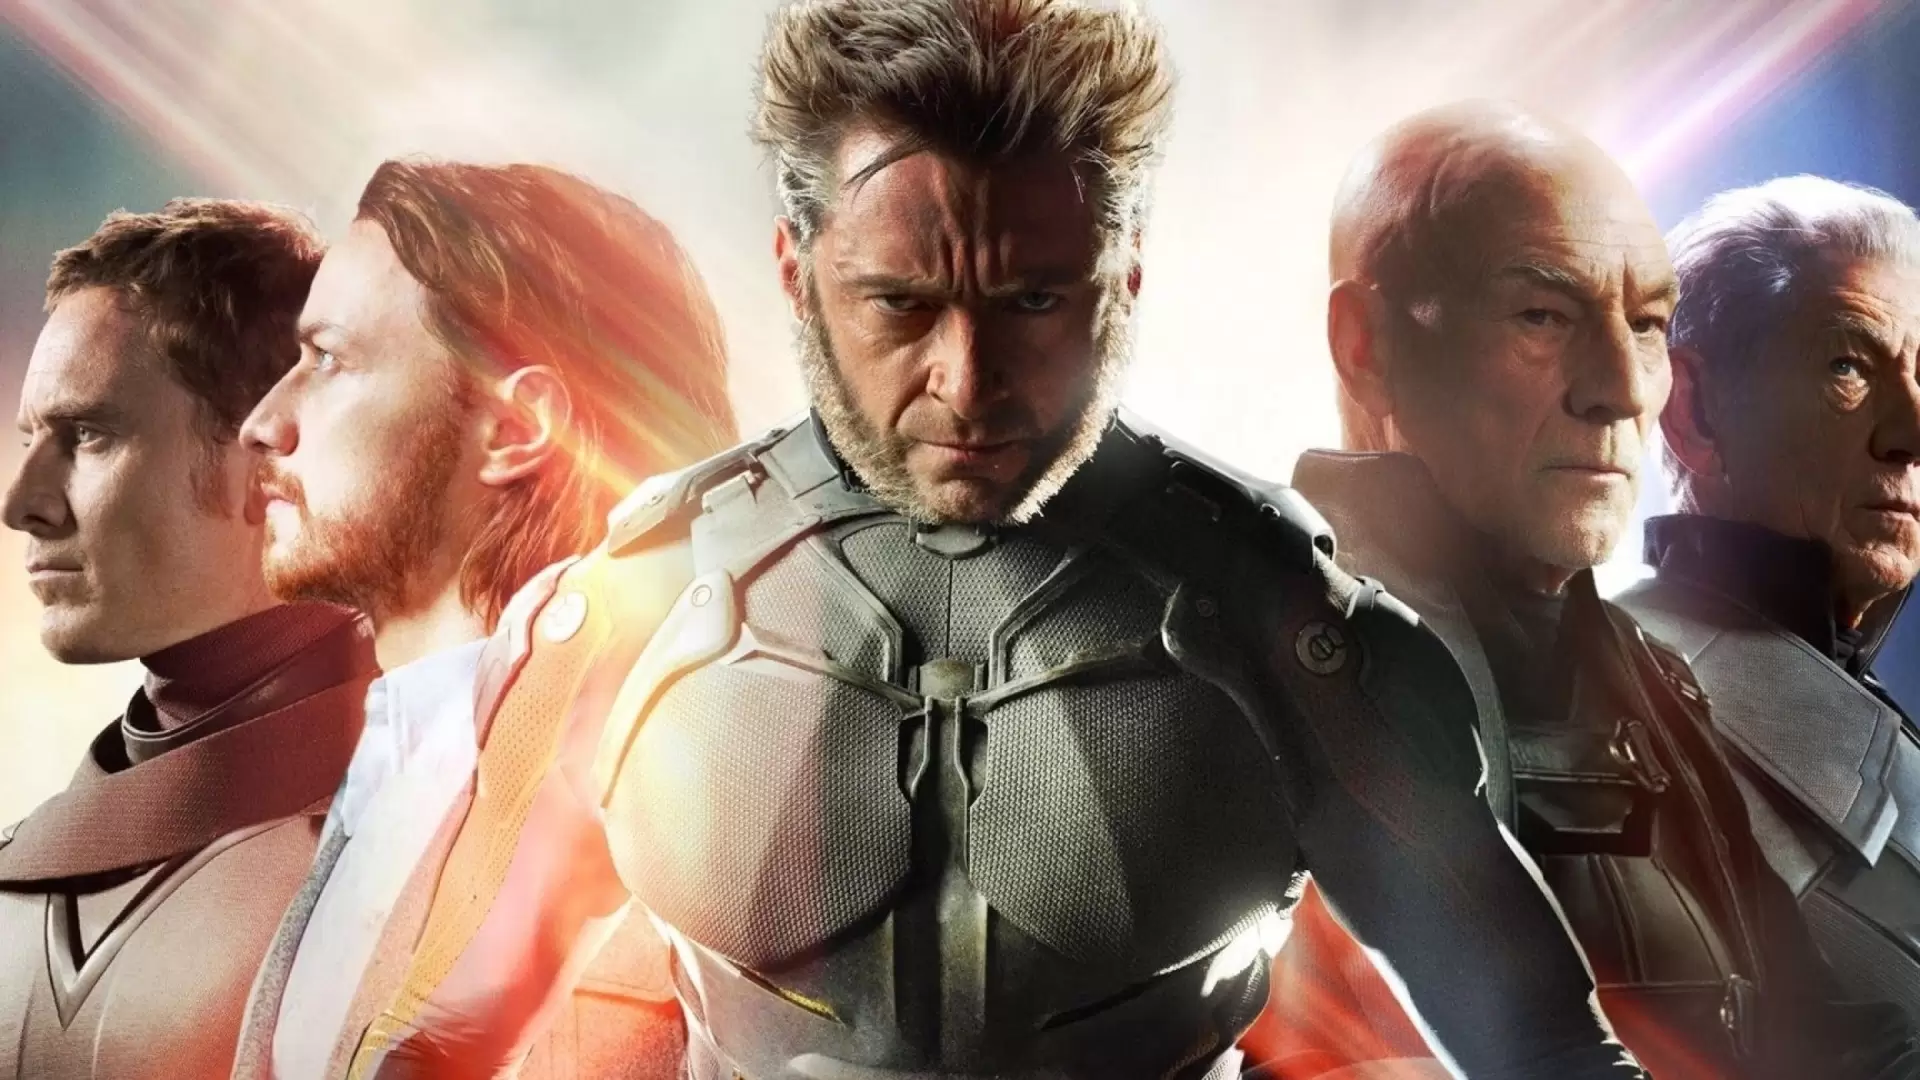 دانلود فیلم X-Men: Days of Future Past 2014 (مردان ایکس: روزهای گذشته آینده) با زیرنویس فارسی و تماشای آنلاین